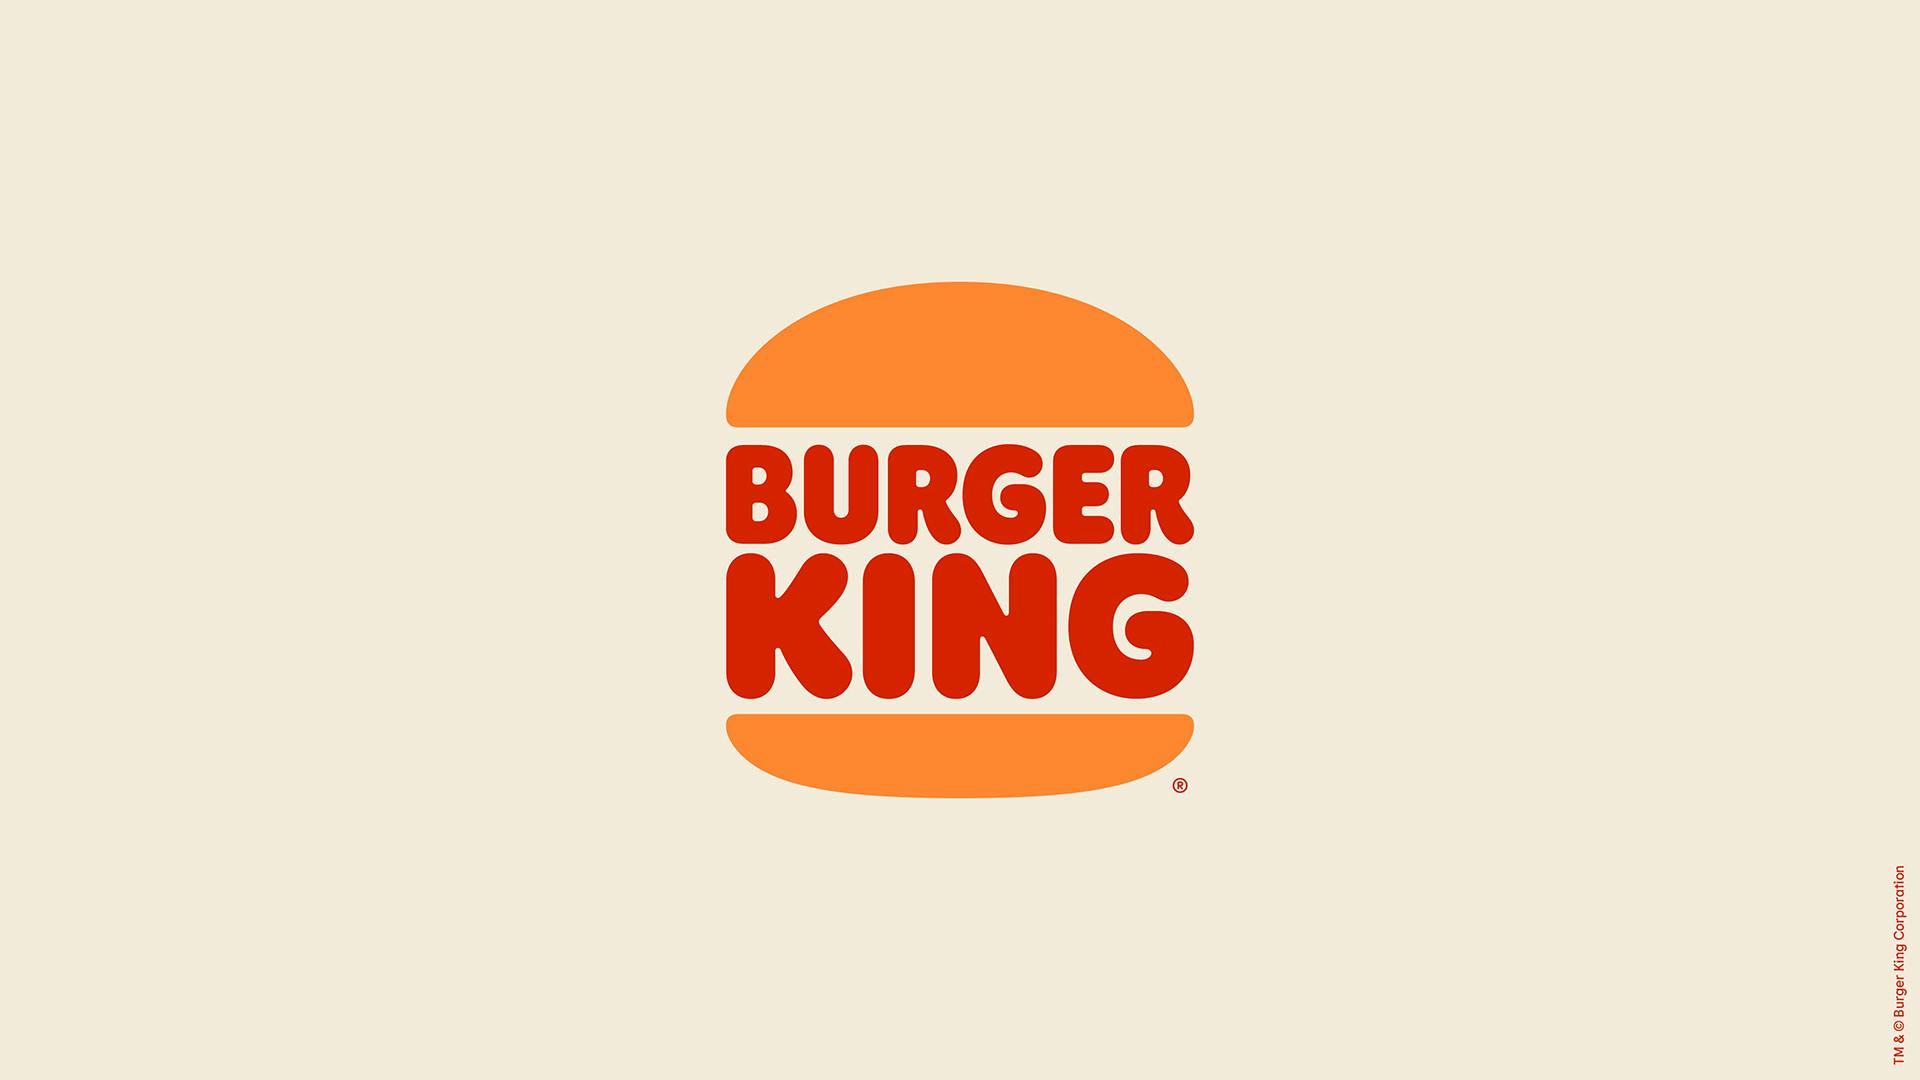 Image of Burger King logo designed by JKR